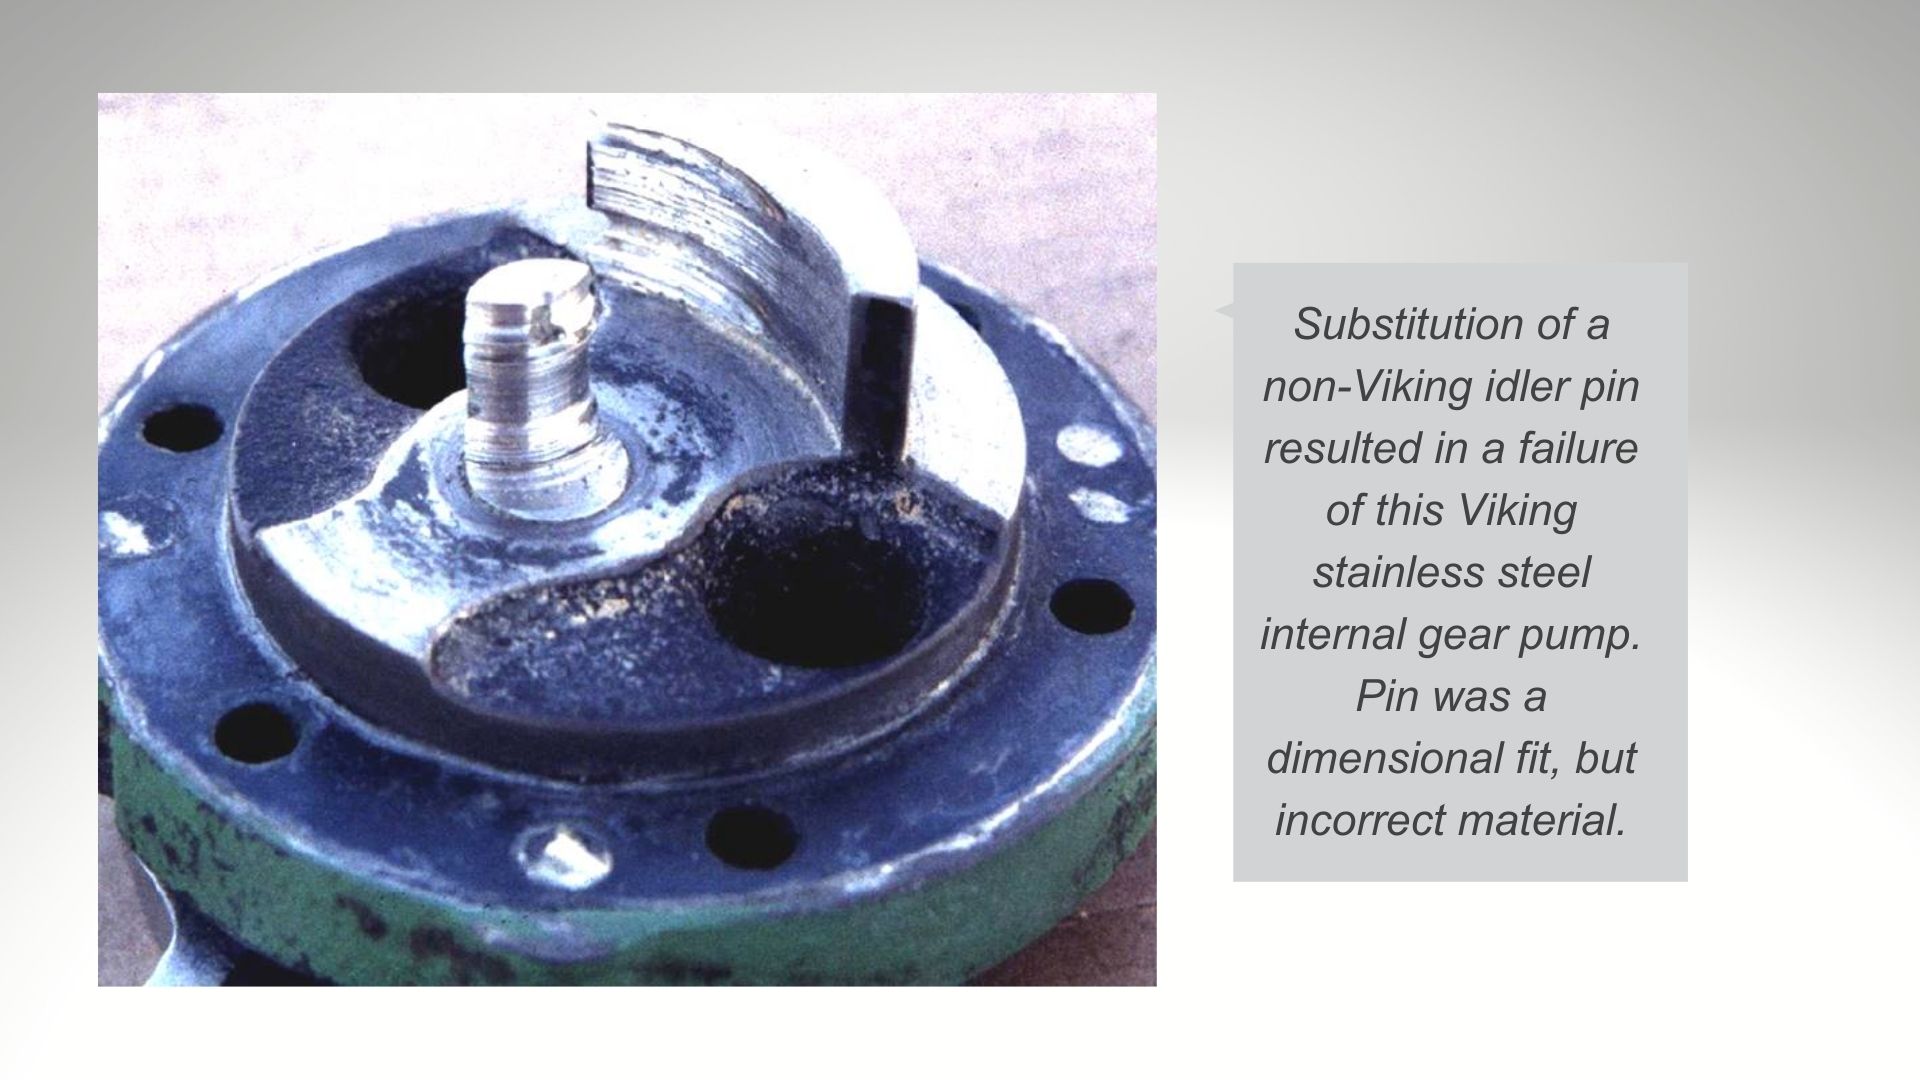 imitation idler pin inside viking stainless steel pump